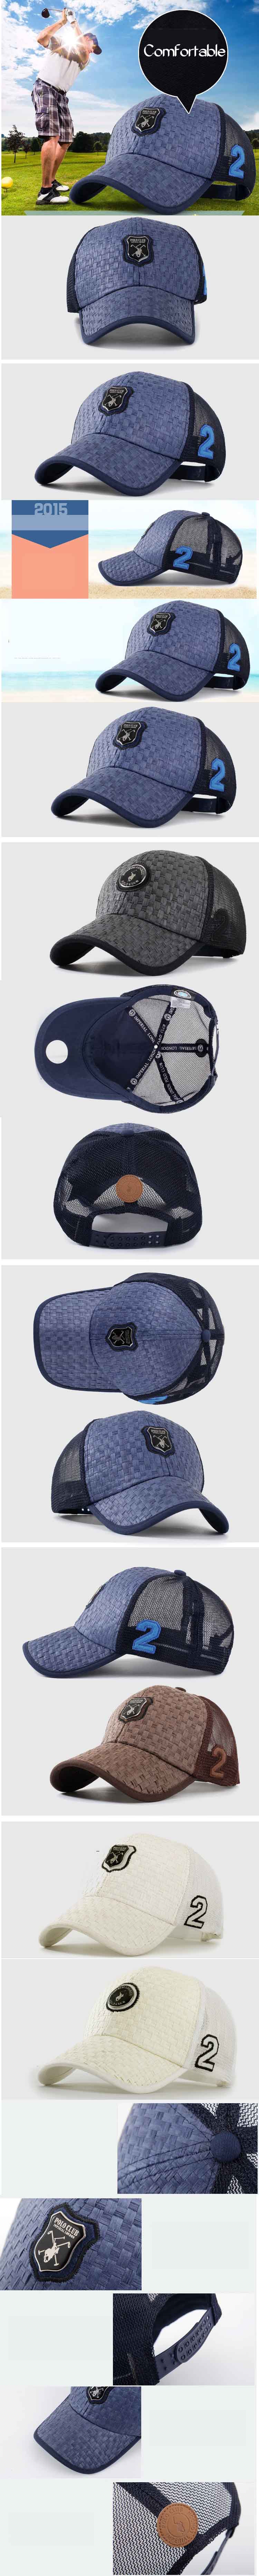 cari topi polo terbaru? cocok untuk kegiatan olahraga golf , temukan koleksi topi online terlengkap dengan harga murah